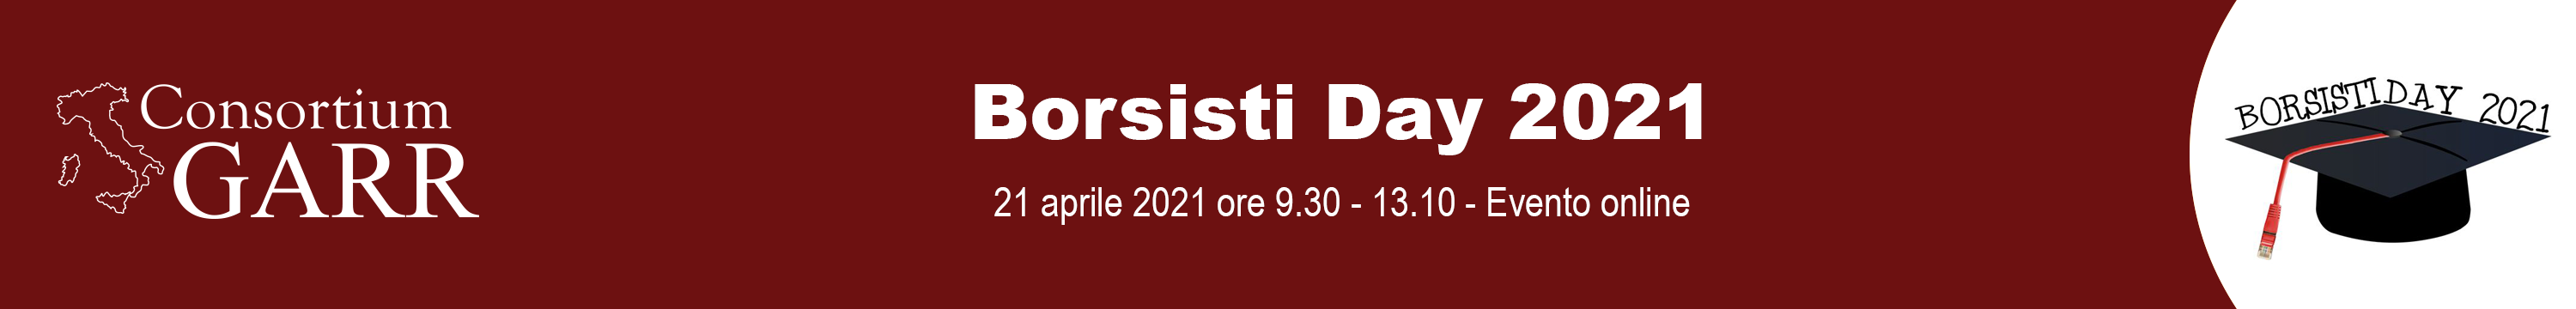 Borsisti Day 2021